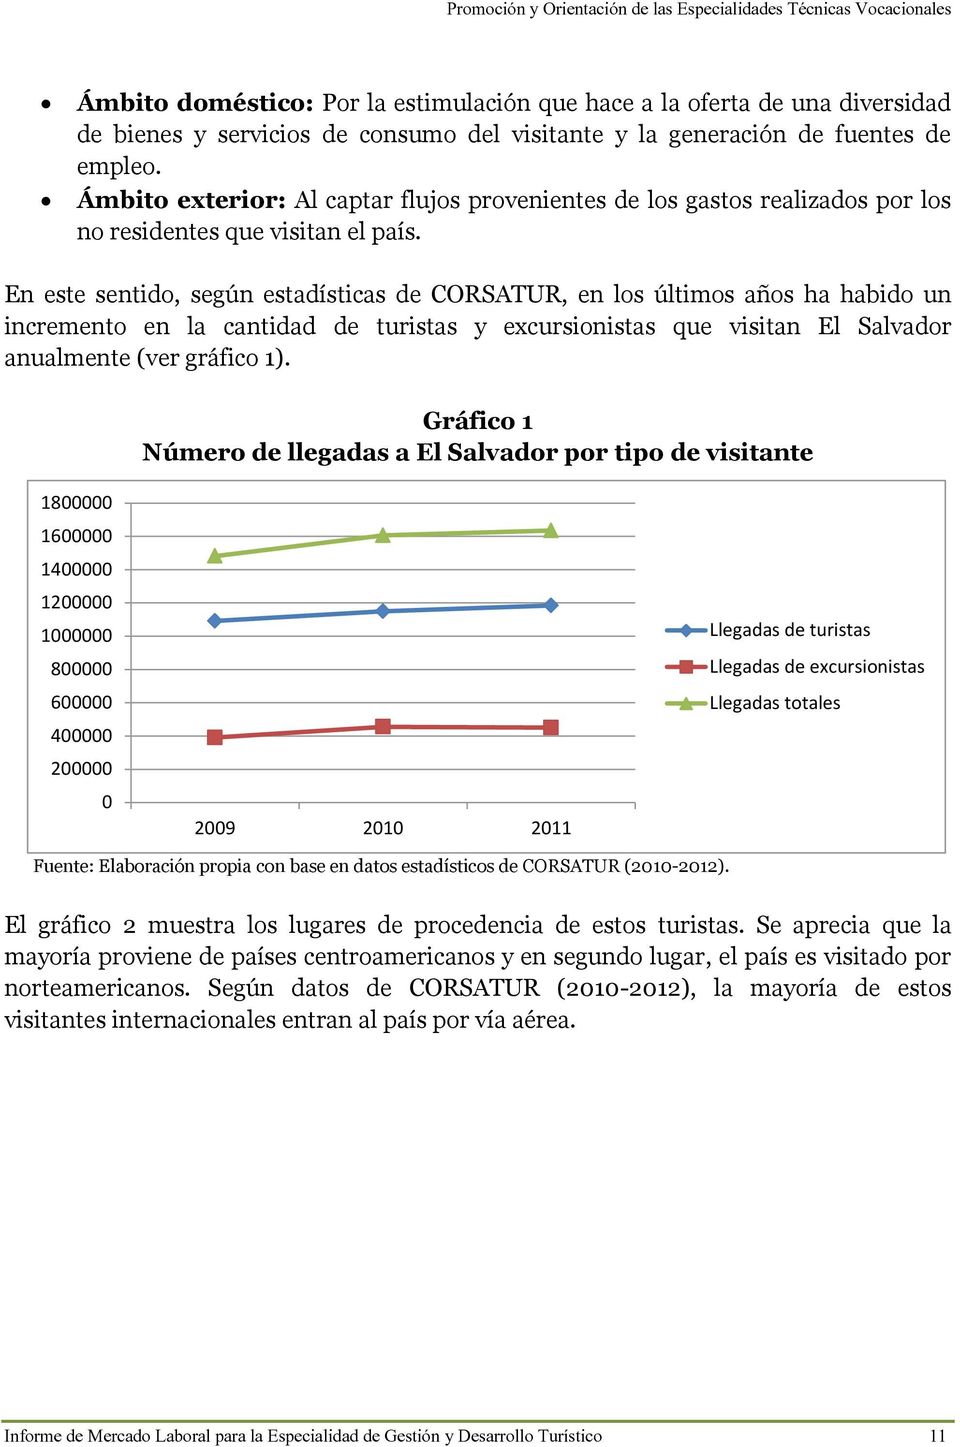 En este sentido, según estadísticas de CORSATUR, en los últimos años ha habido un incremento en la cantidad de turistas y excursionistas que visitan El Salvador anualmente (ver gráfico 1).